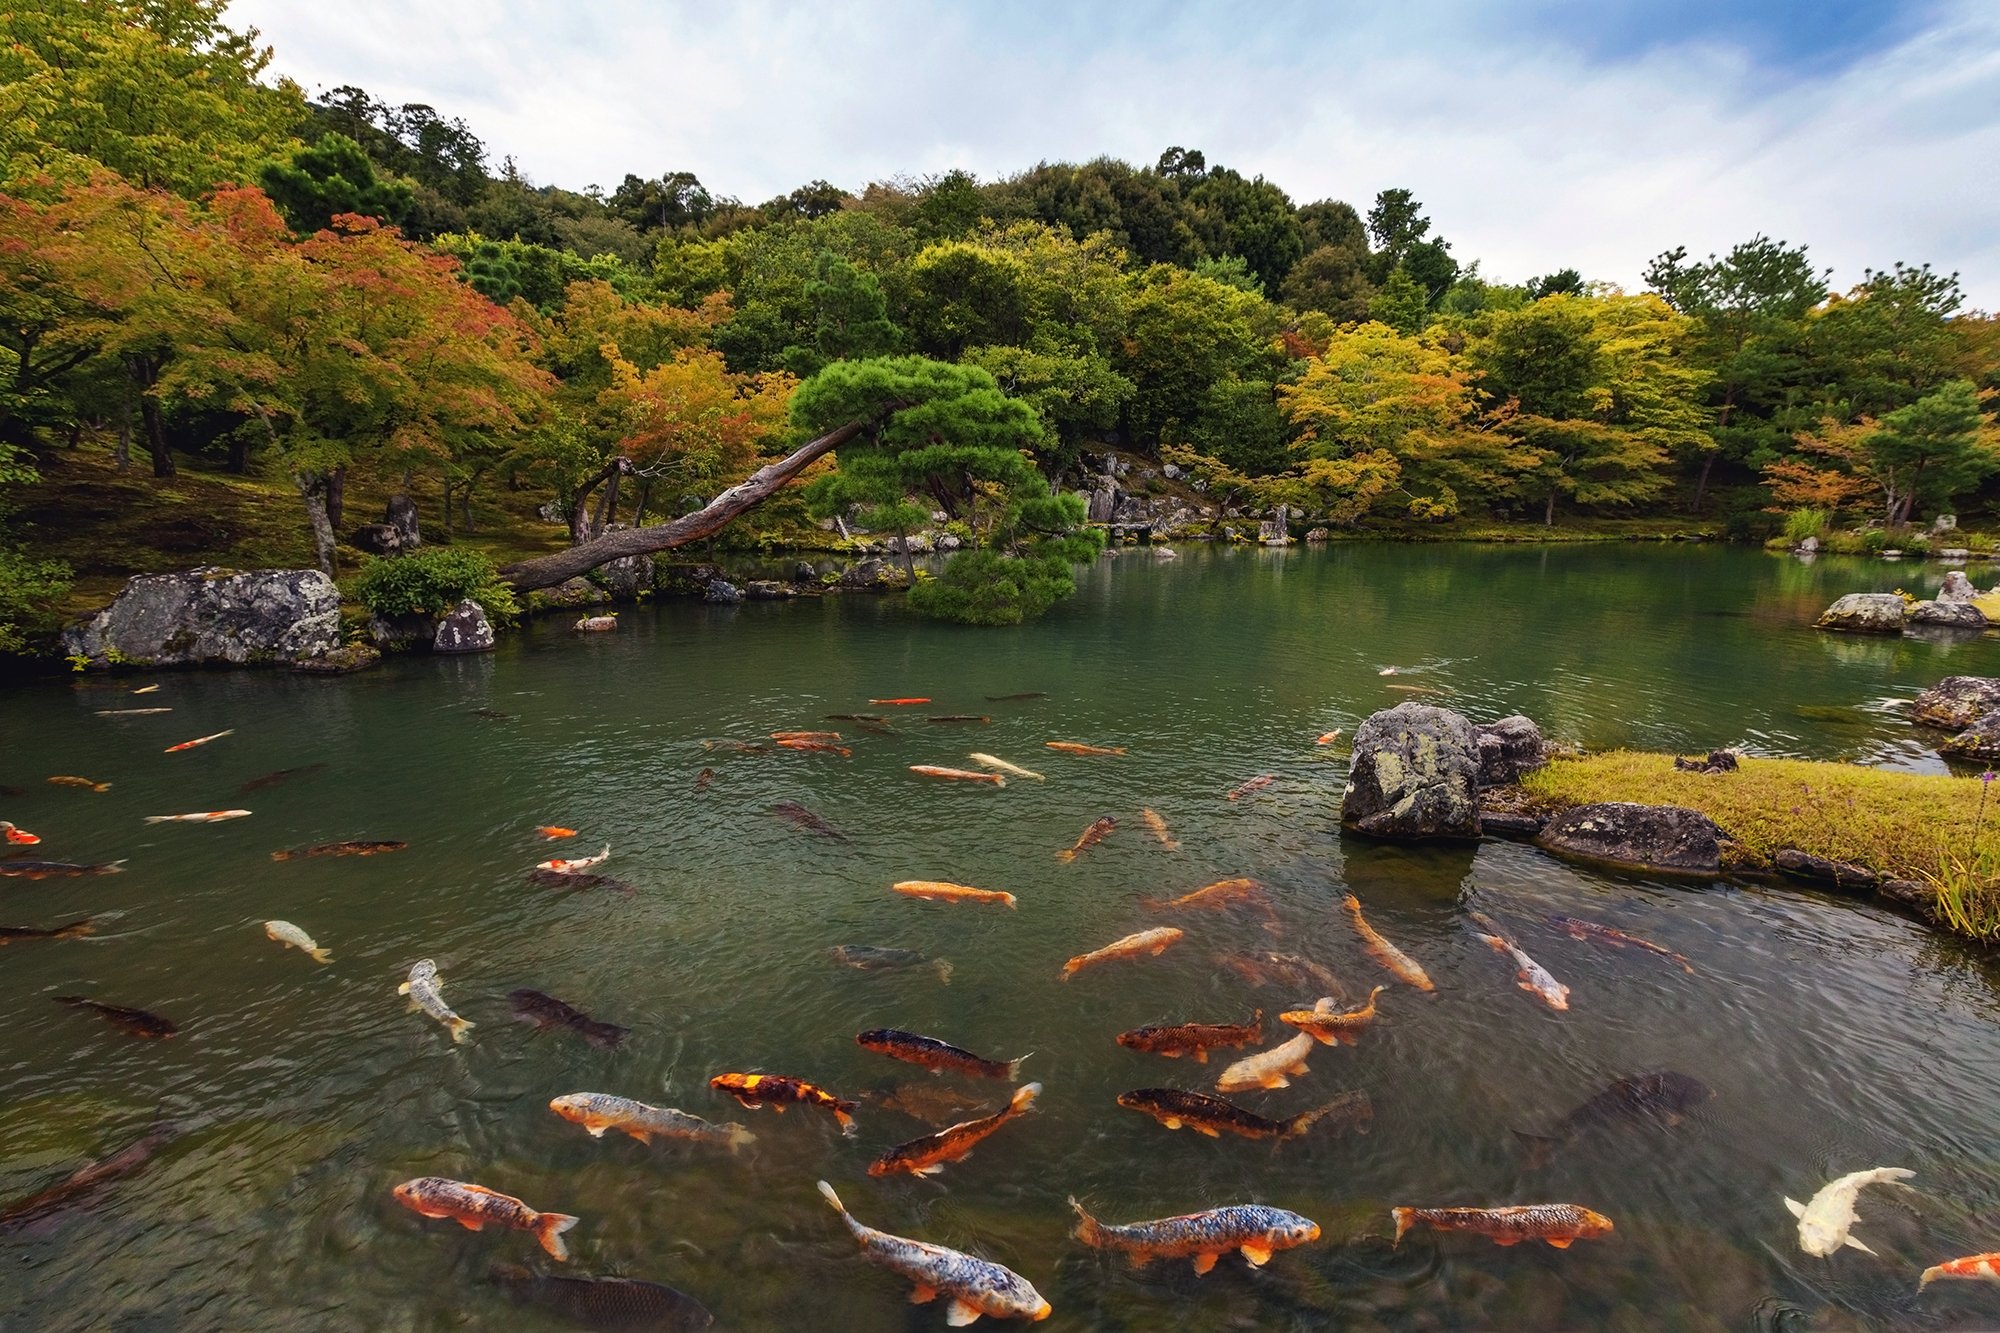 япония, киото, рыбы, карп, пейзаж, природа, пруд, вода, сад, Дара Пилюгина